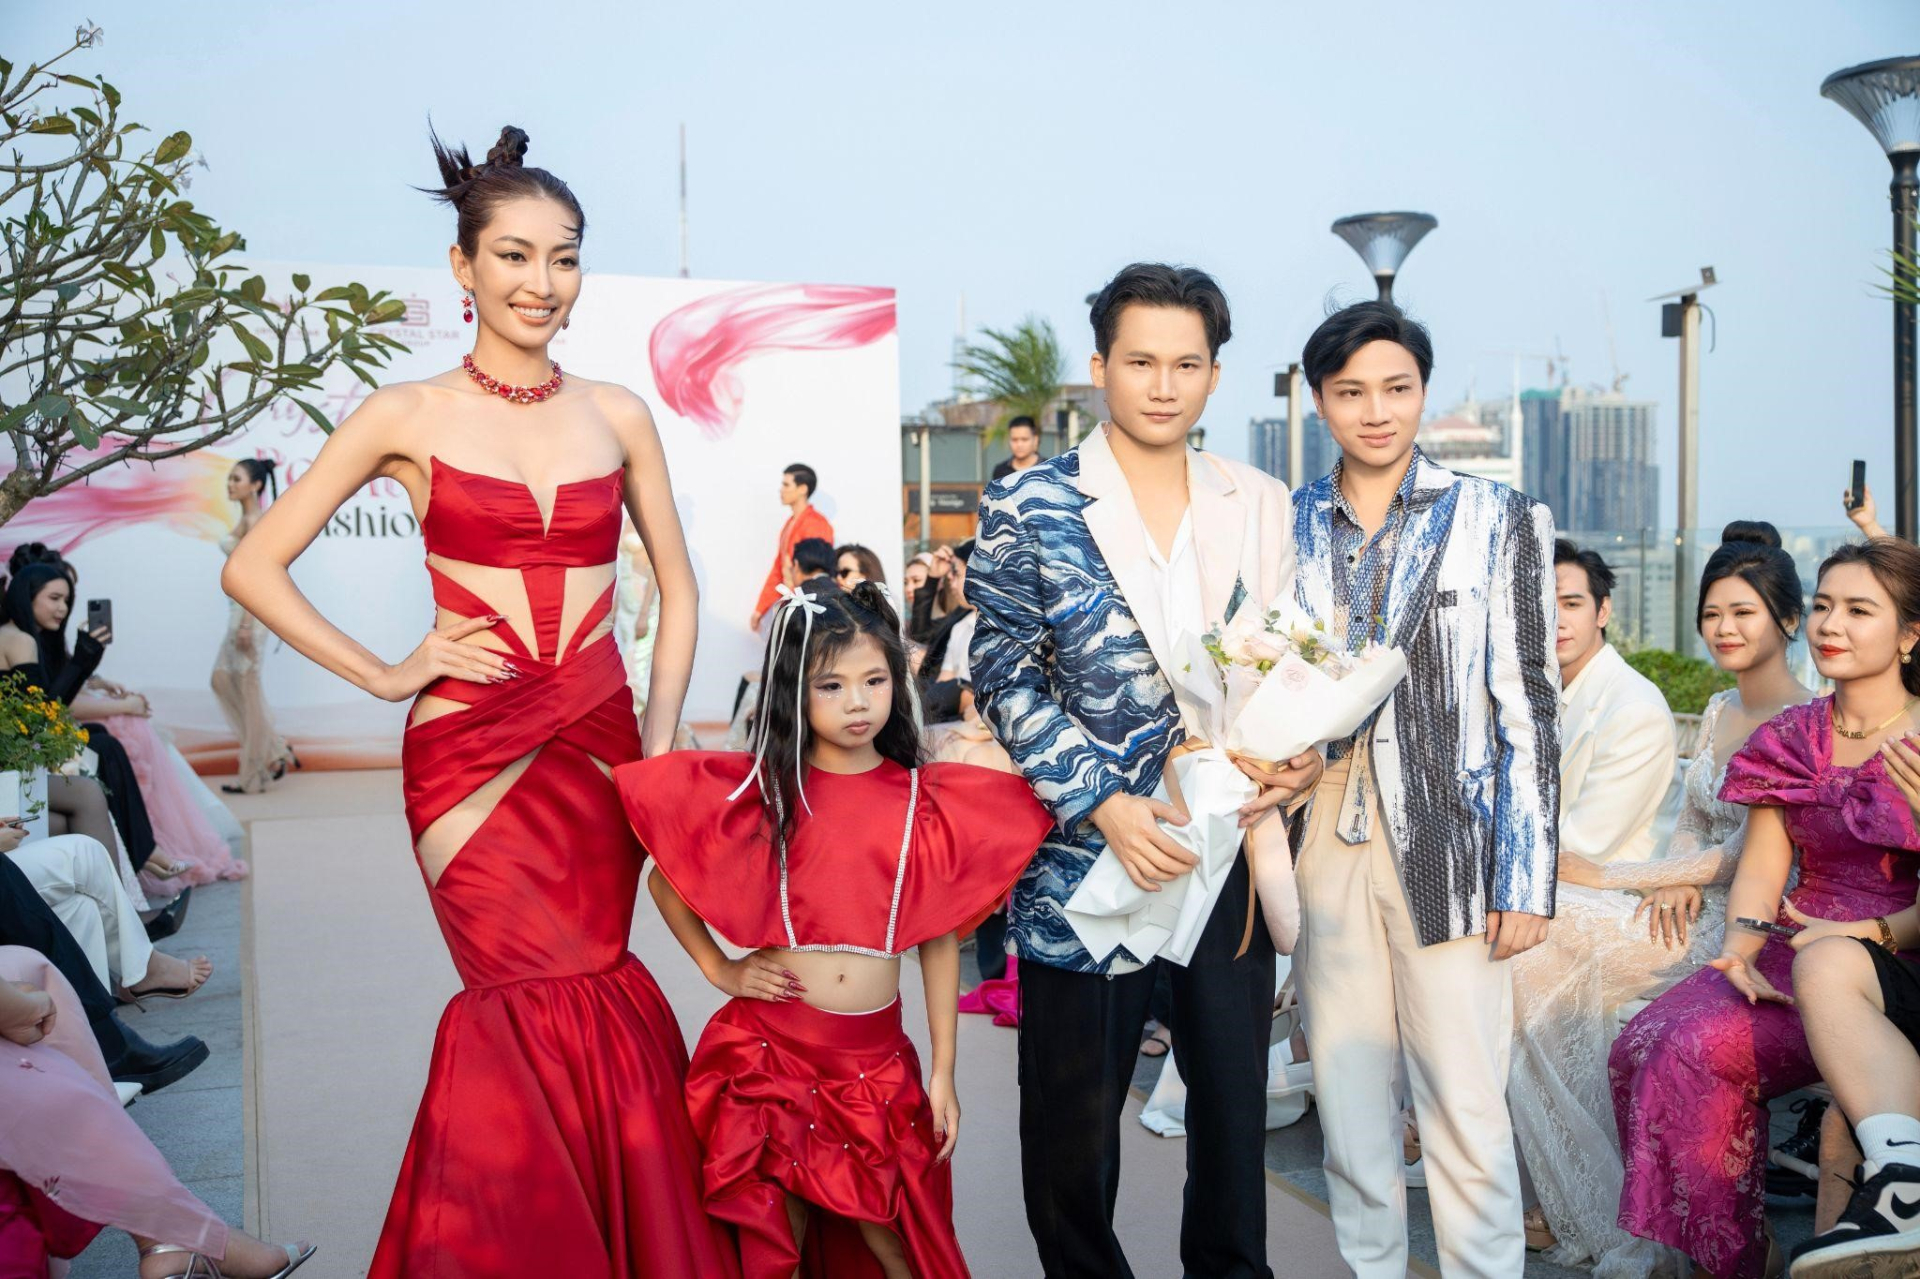 Nam Anh hát ca khúc “Gái Nhà Lành' mở màn show thời trang - ảnh 4